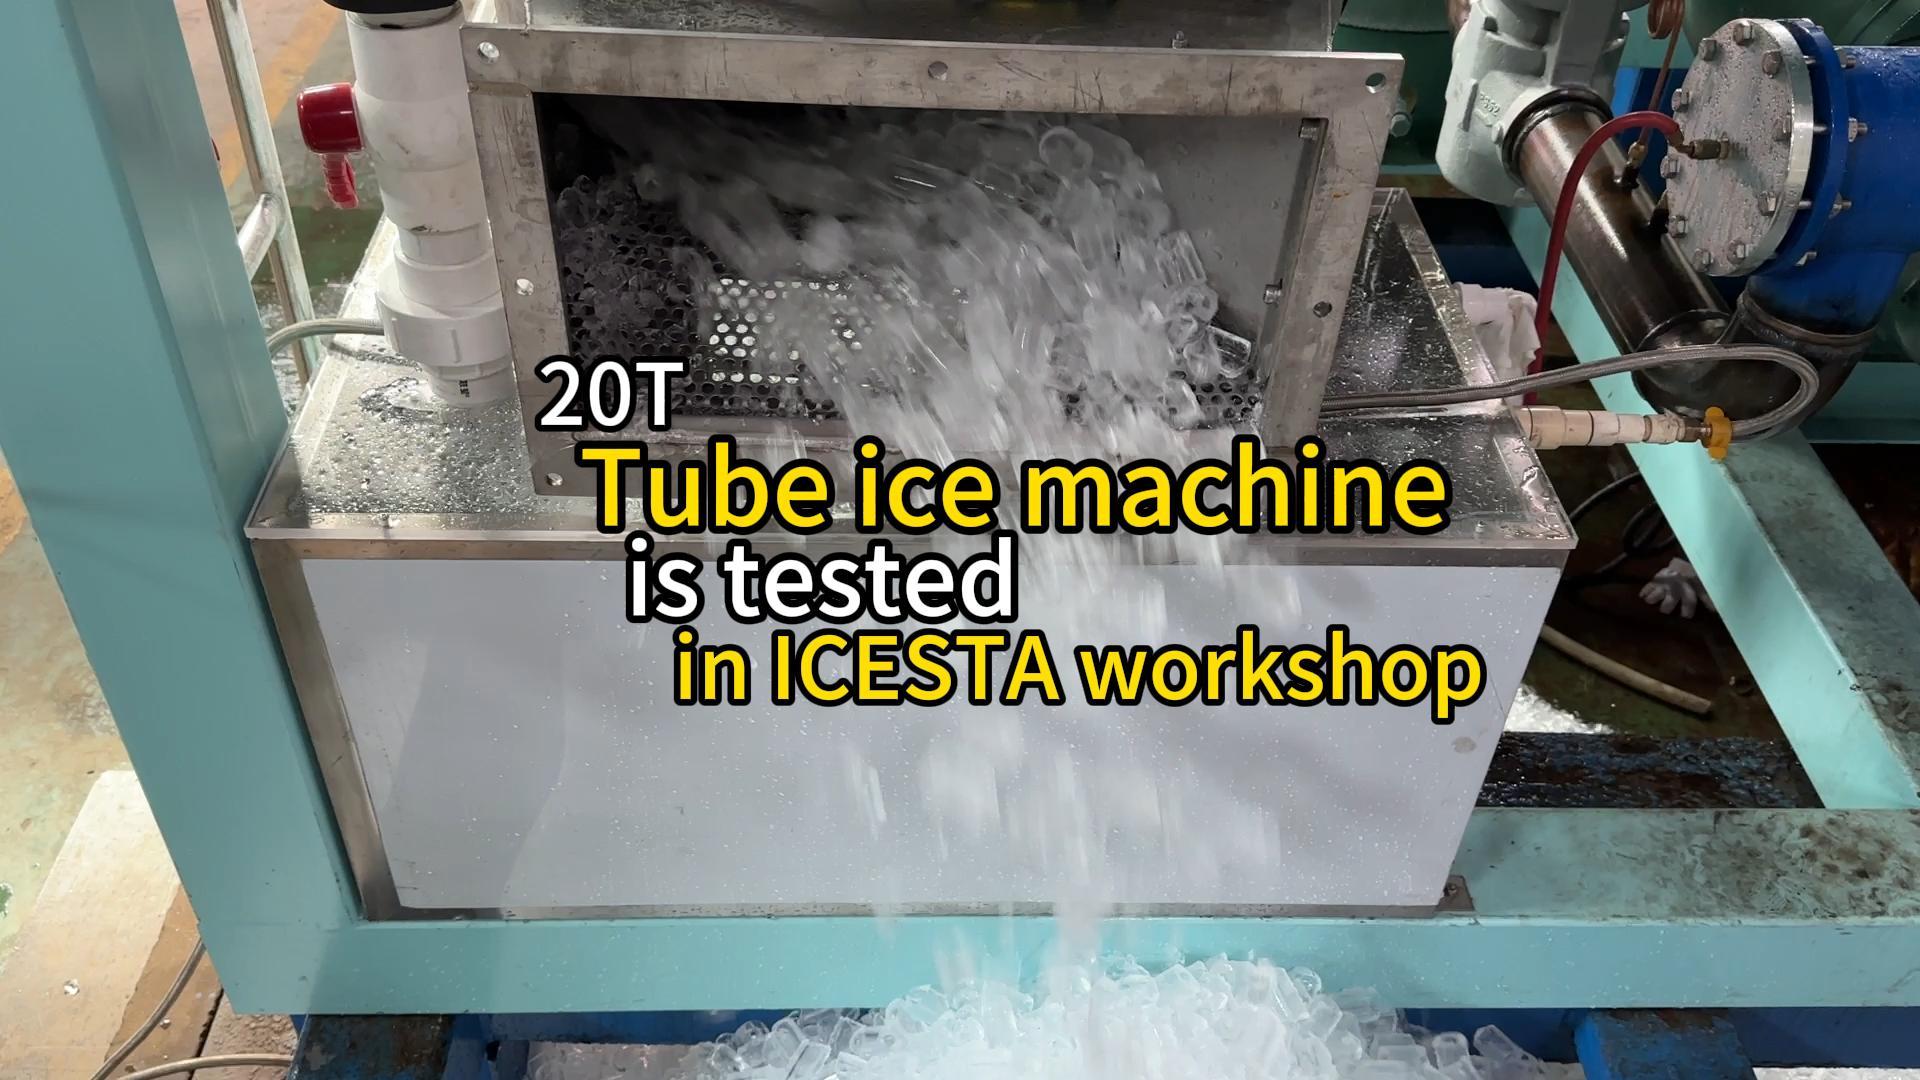 La máquina de hielo en tubos de 20t se prueba en el taller de ICESTA...